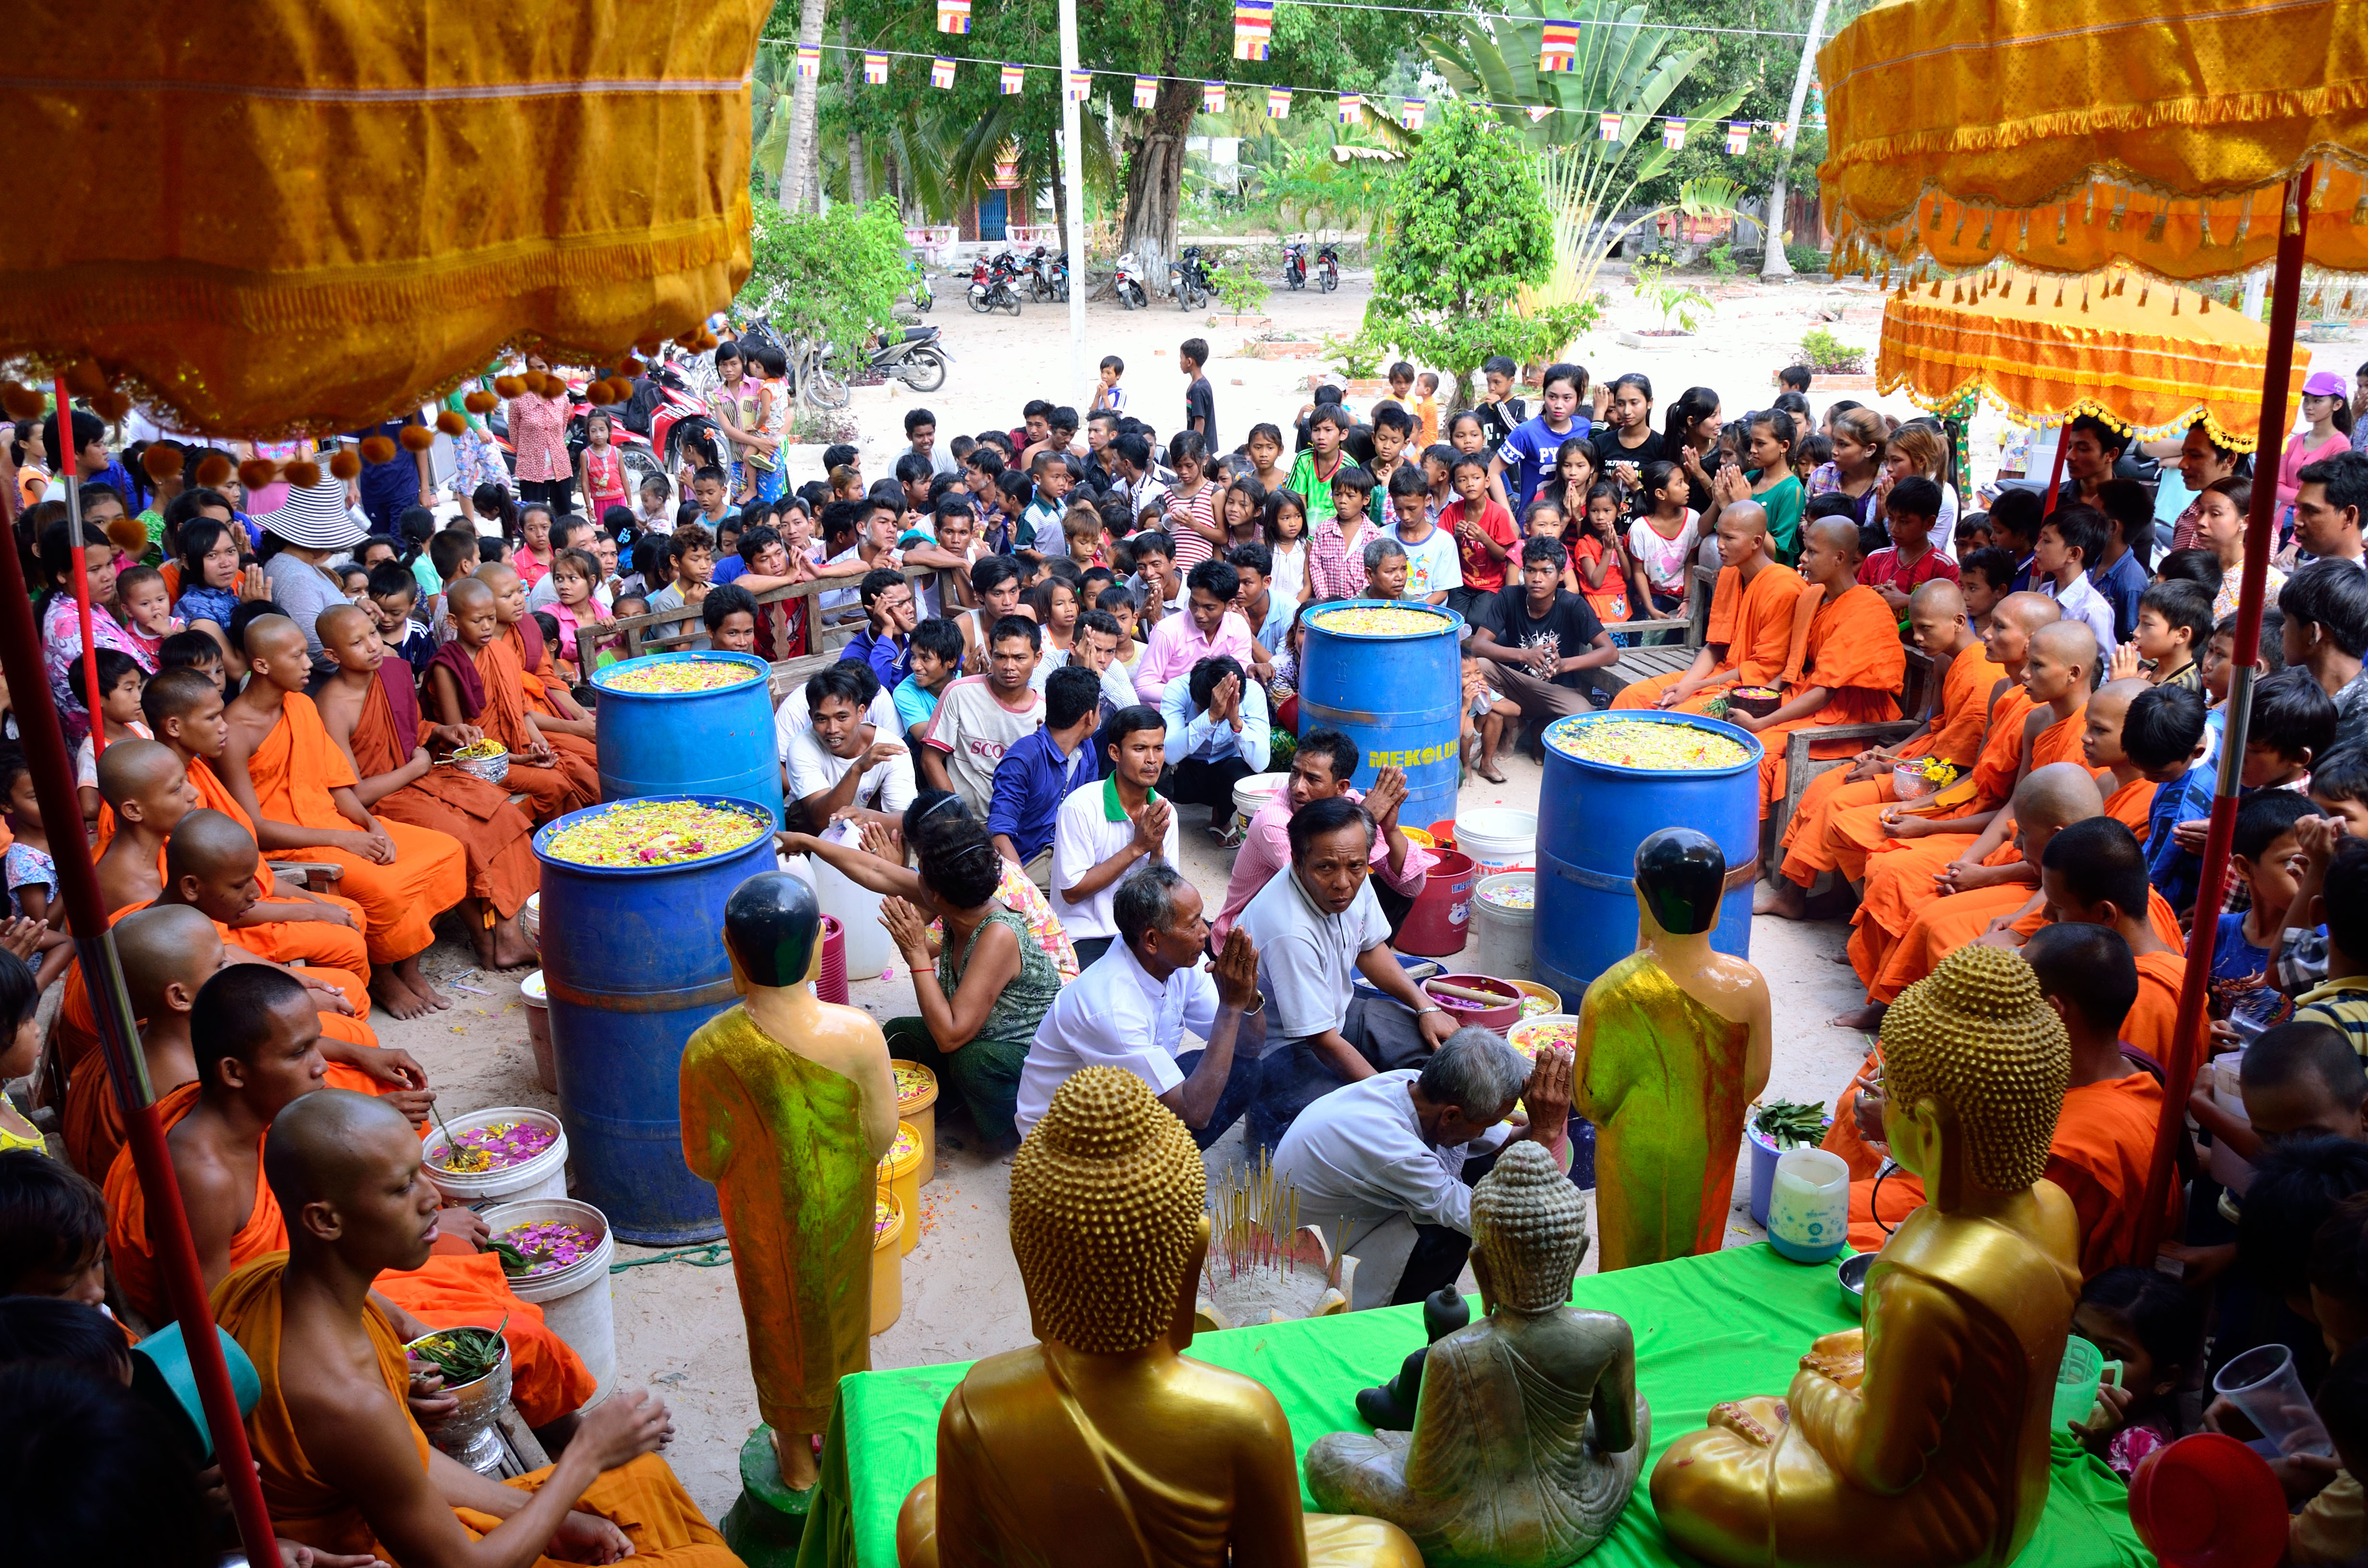 Tết cổ truyền Khmer: Tết cổ truyền của người Khmer là dịp để người dân hân hoan tổ chức lễ hội, cầu nguyện cho một mùa màng bội thu, đón nhận năm mới tốt đẹp. Du khách sẽ có cơ hội trải nghiệm không gian Tết đặc trưng của người Khmer và tham gia vào các hoạt động vui nhộn, ý nghĩa như đốt nhang, cúng tạo hạnh phúc cho gia đình, đón xuân trong sự náo nhiệt của bữa tiệc Tết đậm chất dân tộc.